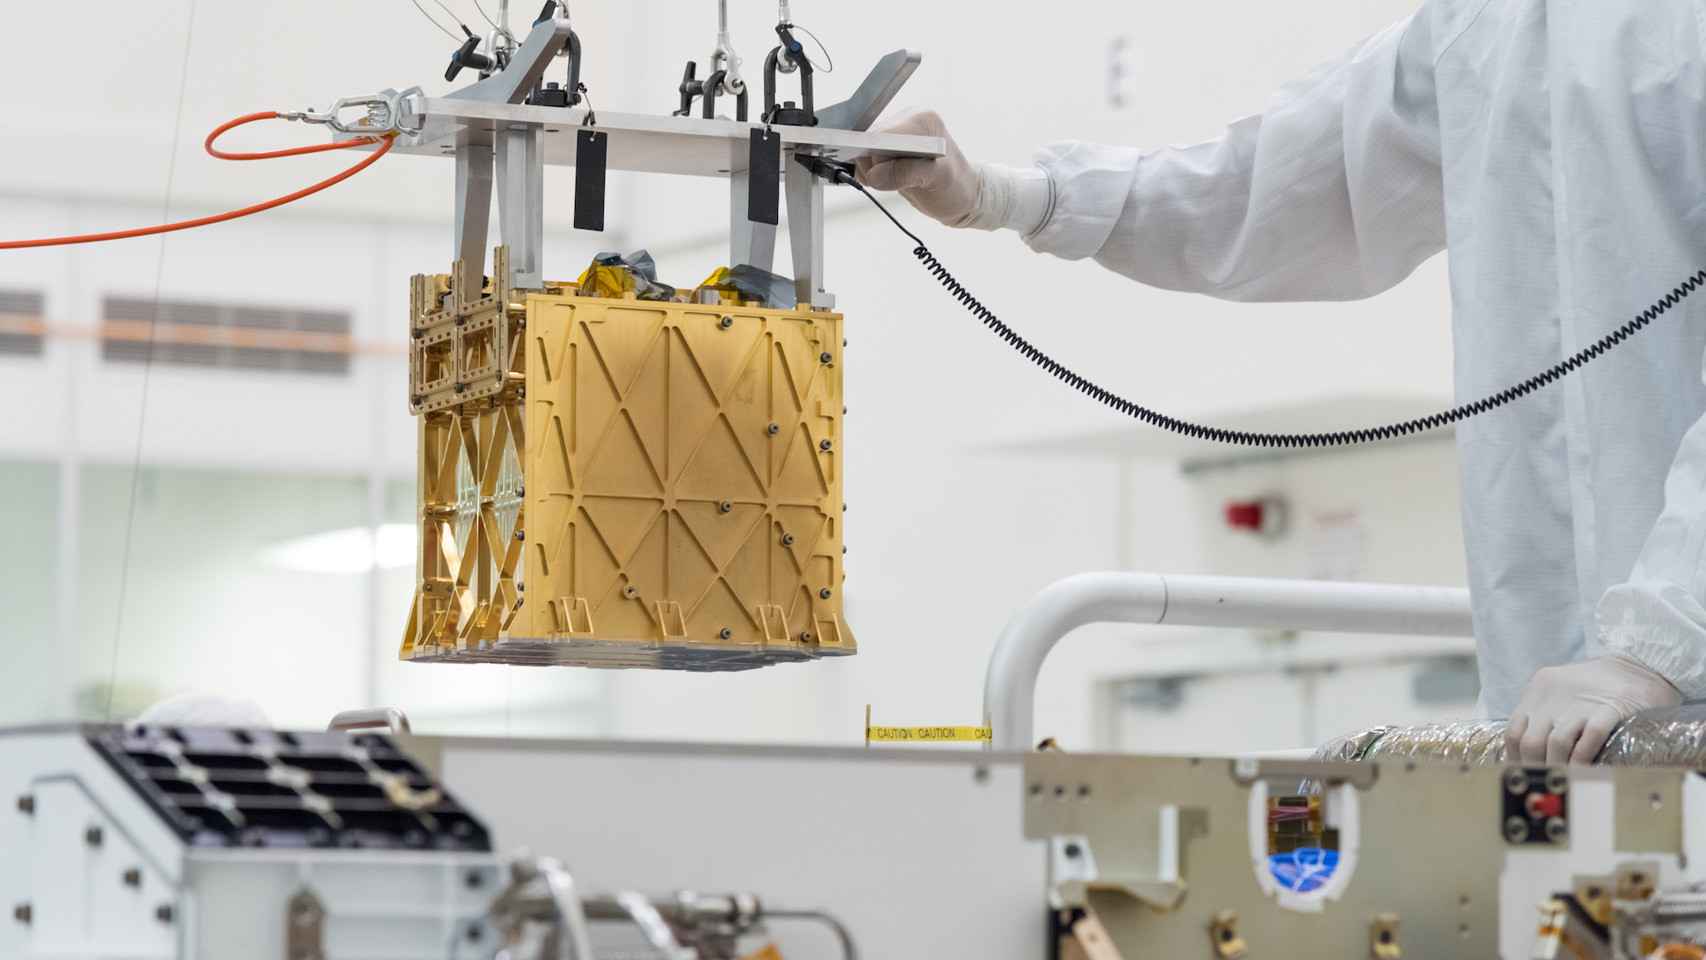 MOXIE, el dispositivo usado para generar oxígeno en Marte.